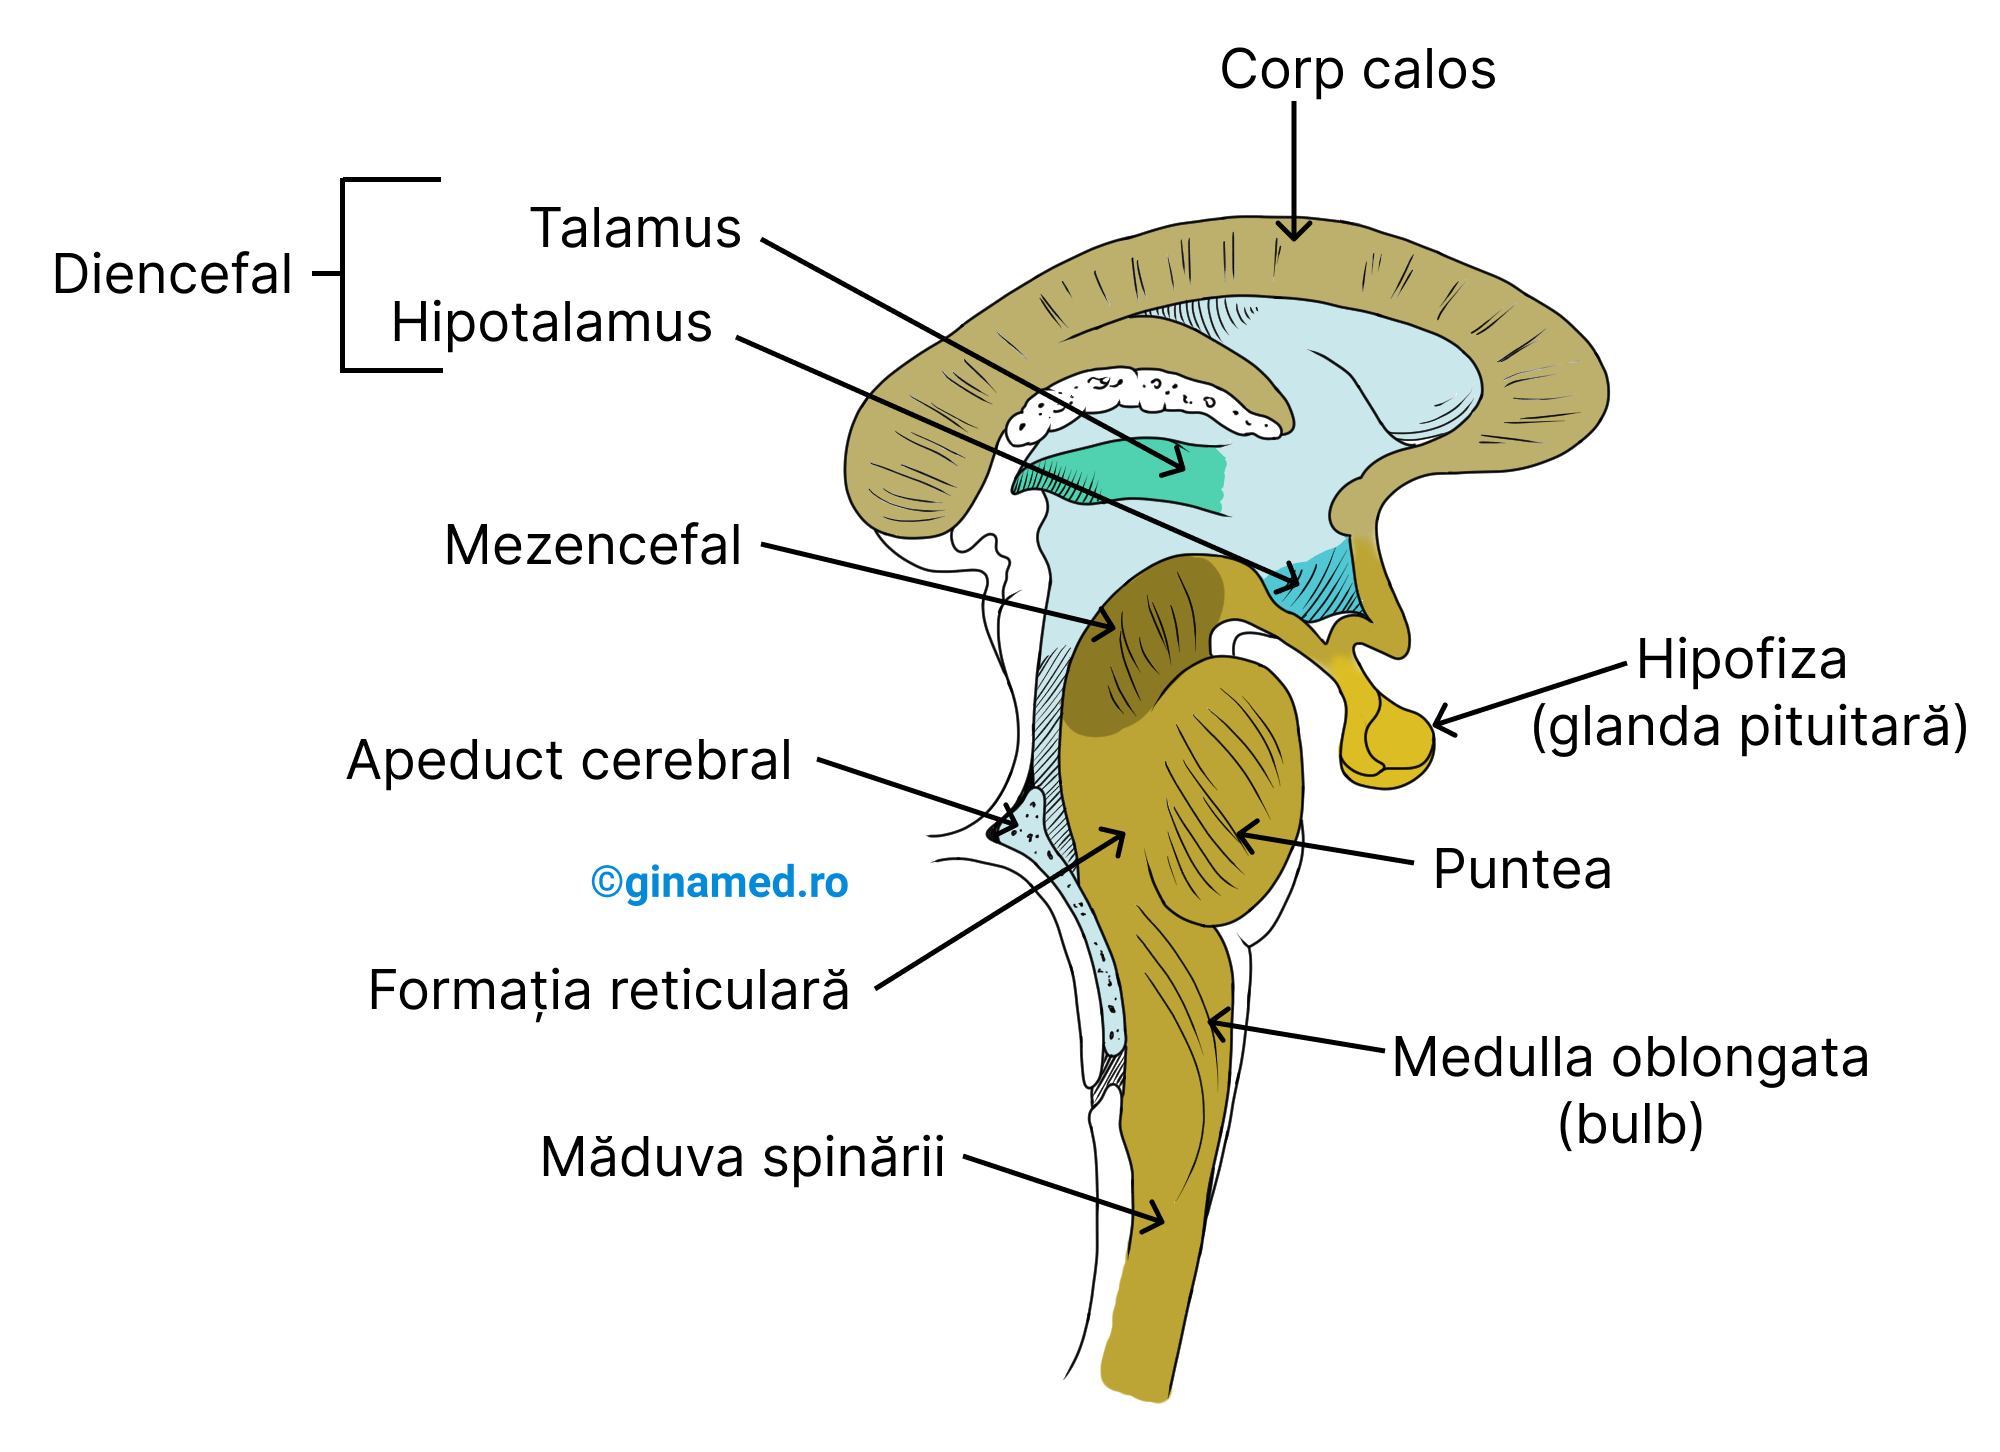 Componentele trunchiului cerebral (mezencefal, punte, medulla oblongata sau bulbul rahidian) și ale diencefalului (este superior trunchiului cerebral).